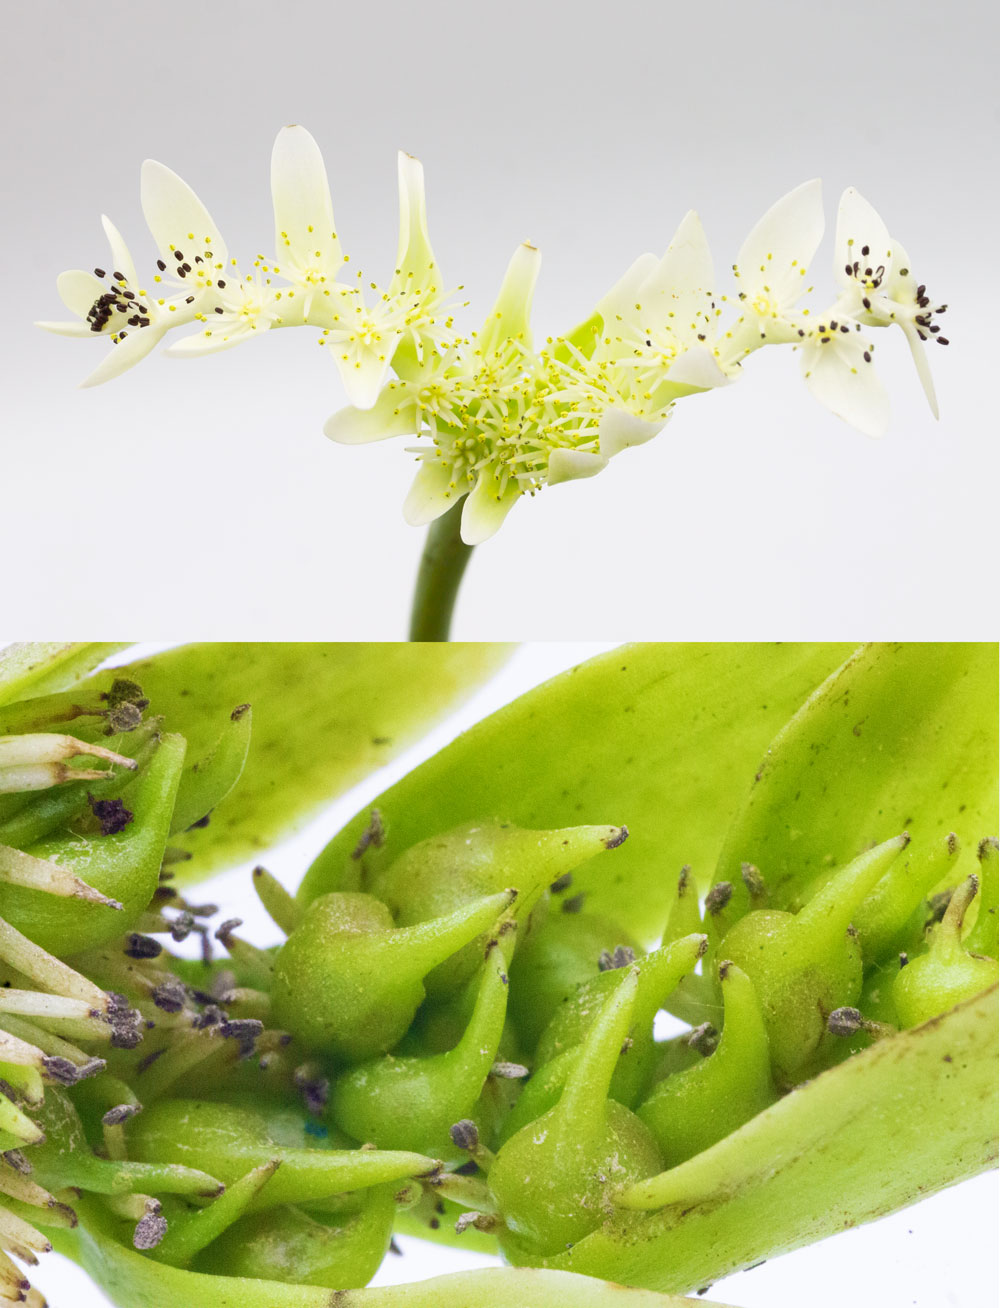 Blütenstand und junge Früchte von Aponogeton distchyos